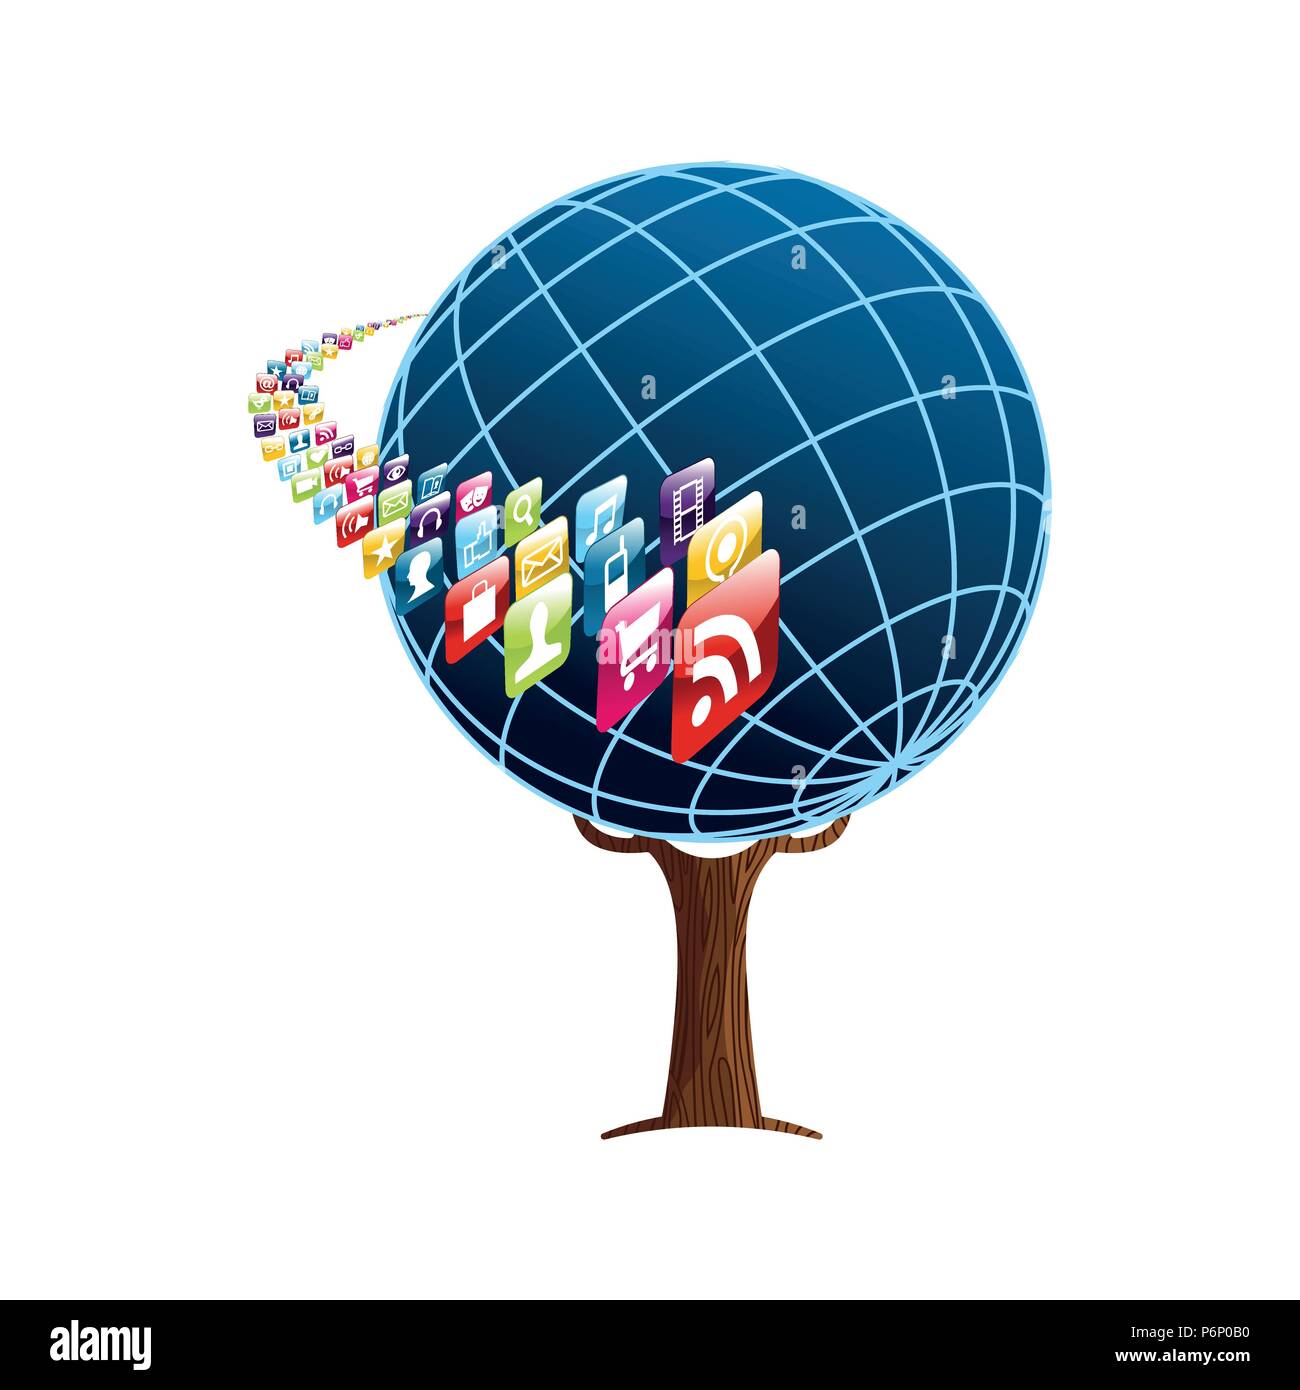 Baum mit Handy App Icons. Konzept Abbildung über globale Kommunikation, Internet Projekt oder On-line-Geschäft. EPS 10 Vektor. Stock Vektor